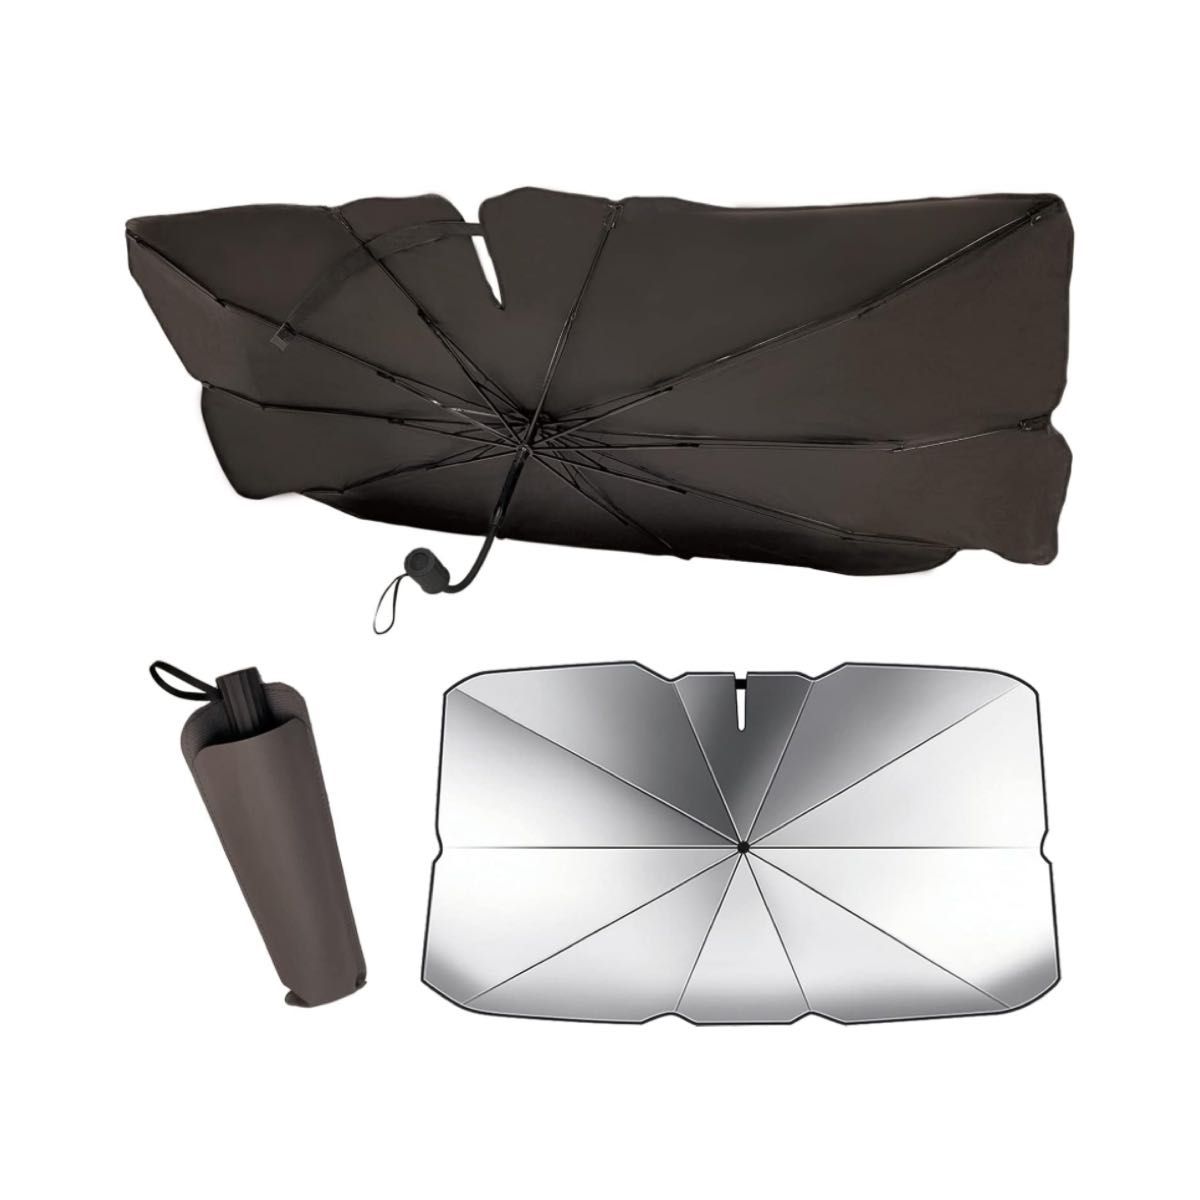 車用 サンシェード 遮熱 フロントガラス用 傘型 傘式 収納袋付き 黒 ブラック  